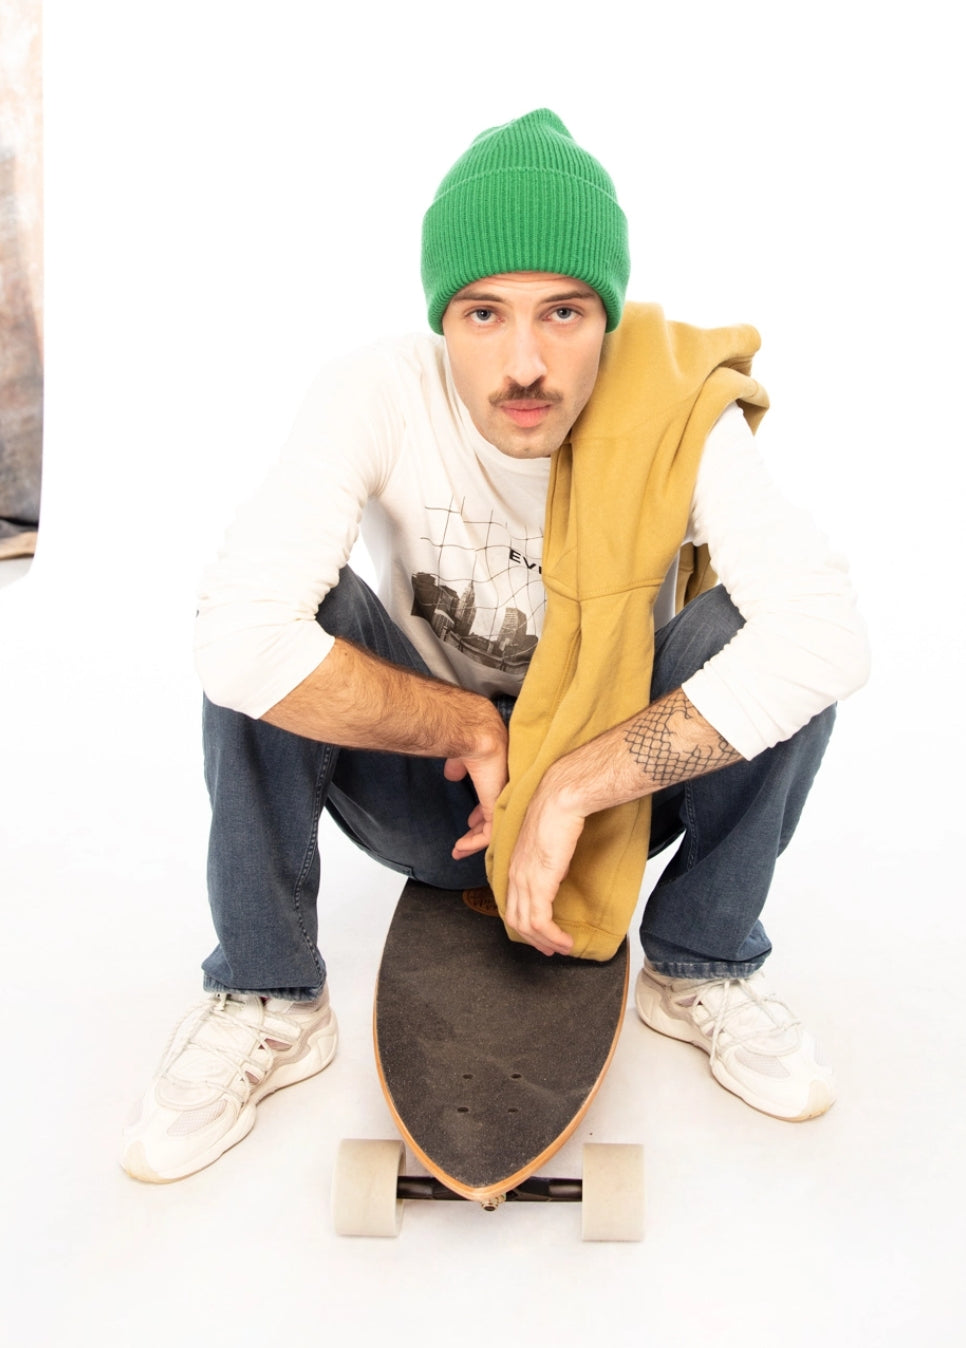 LOSAN - Collection Casual, hombre sentado en patineta con un gorro verde, sudor blanco y una sudadera con capucha amarilla sobre el hombro